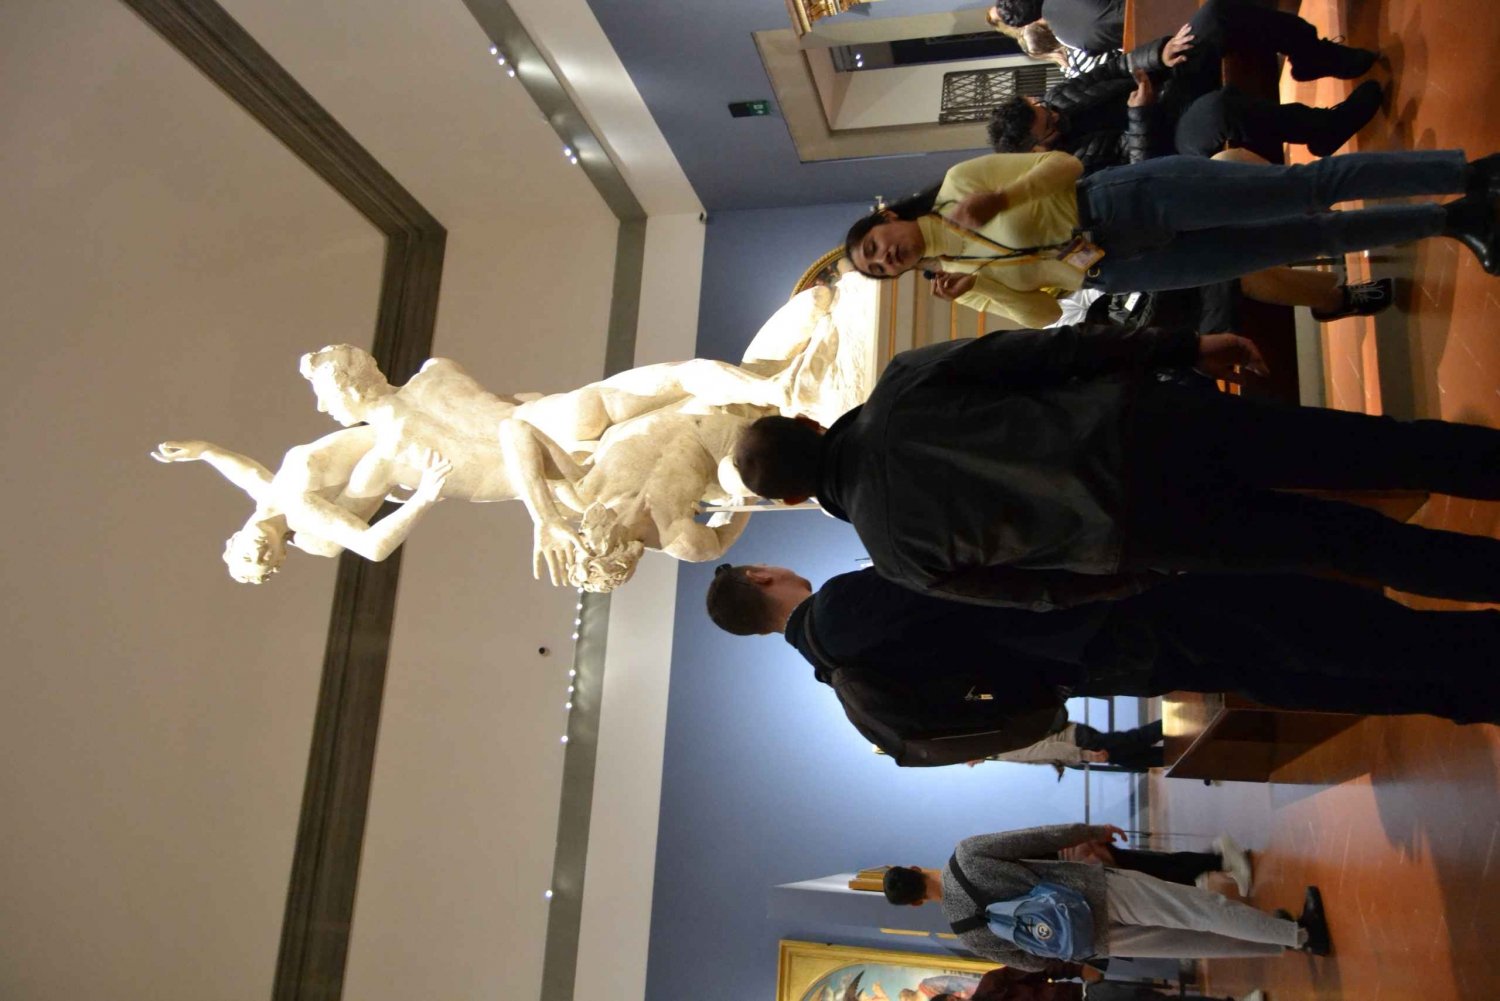 Florenz Tour: Michelangelos David mit bevorzugtem Zugang